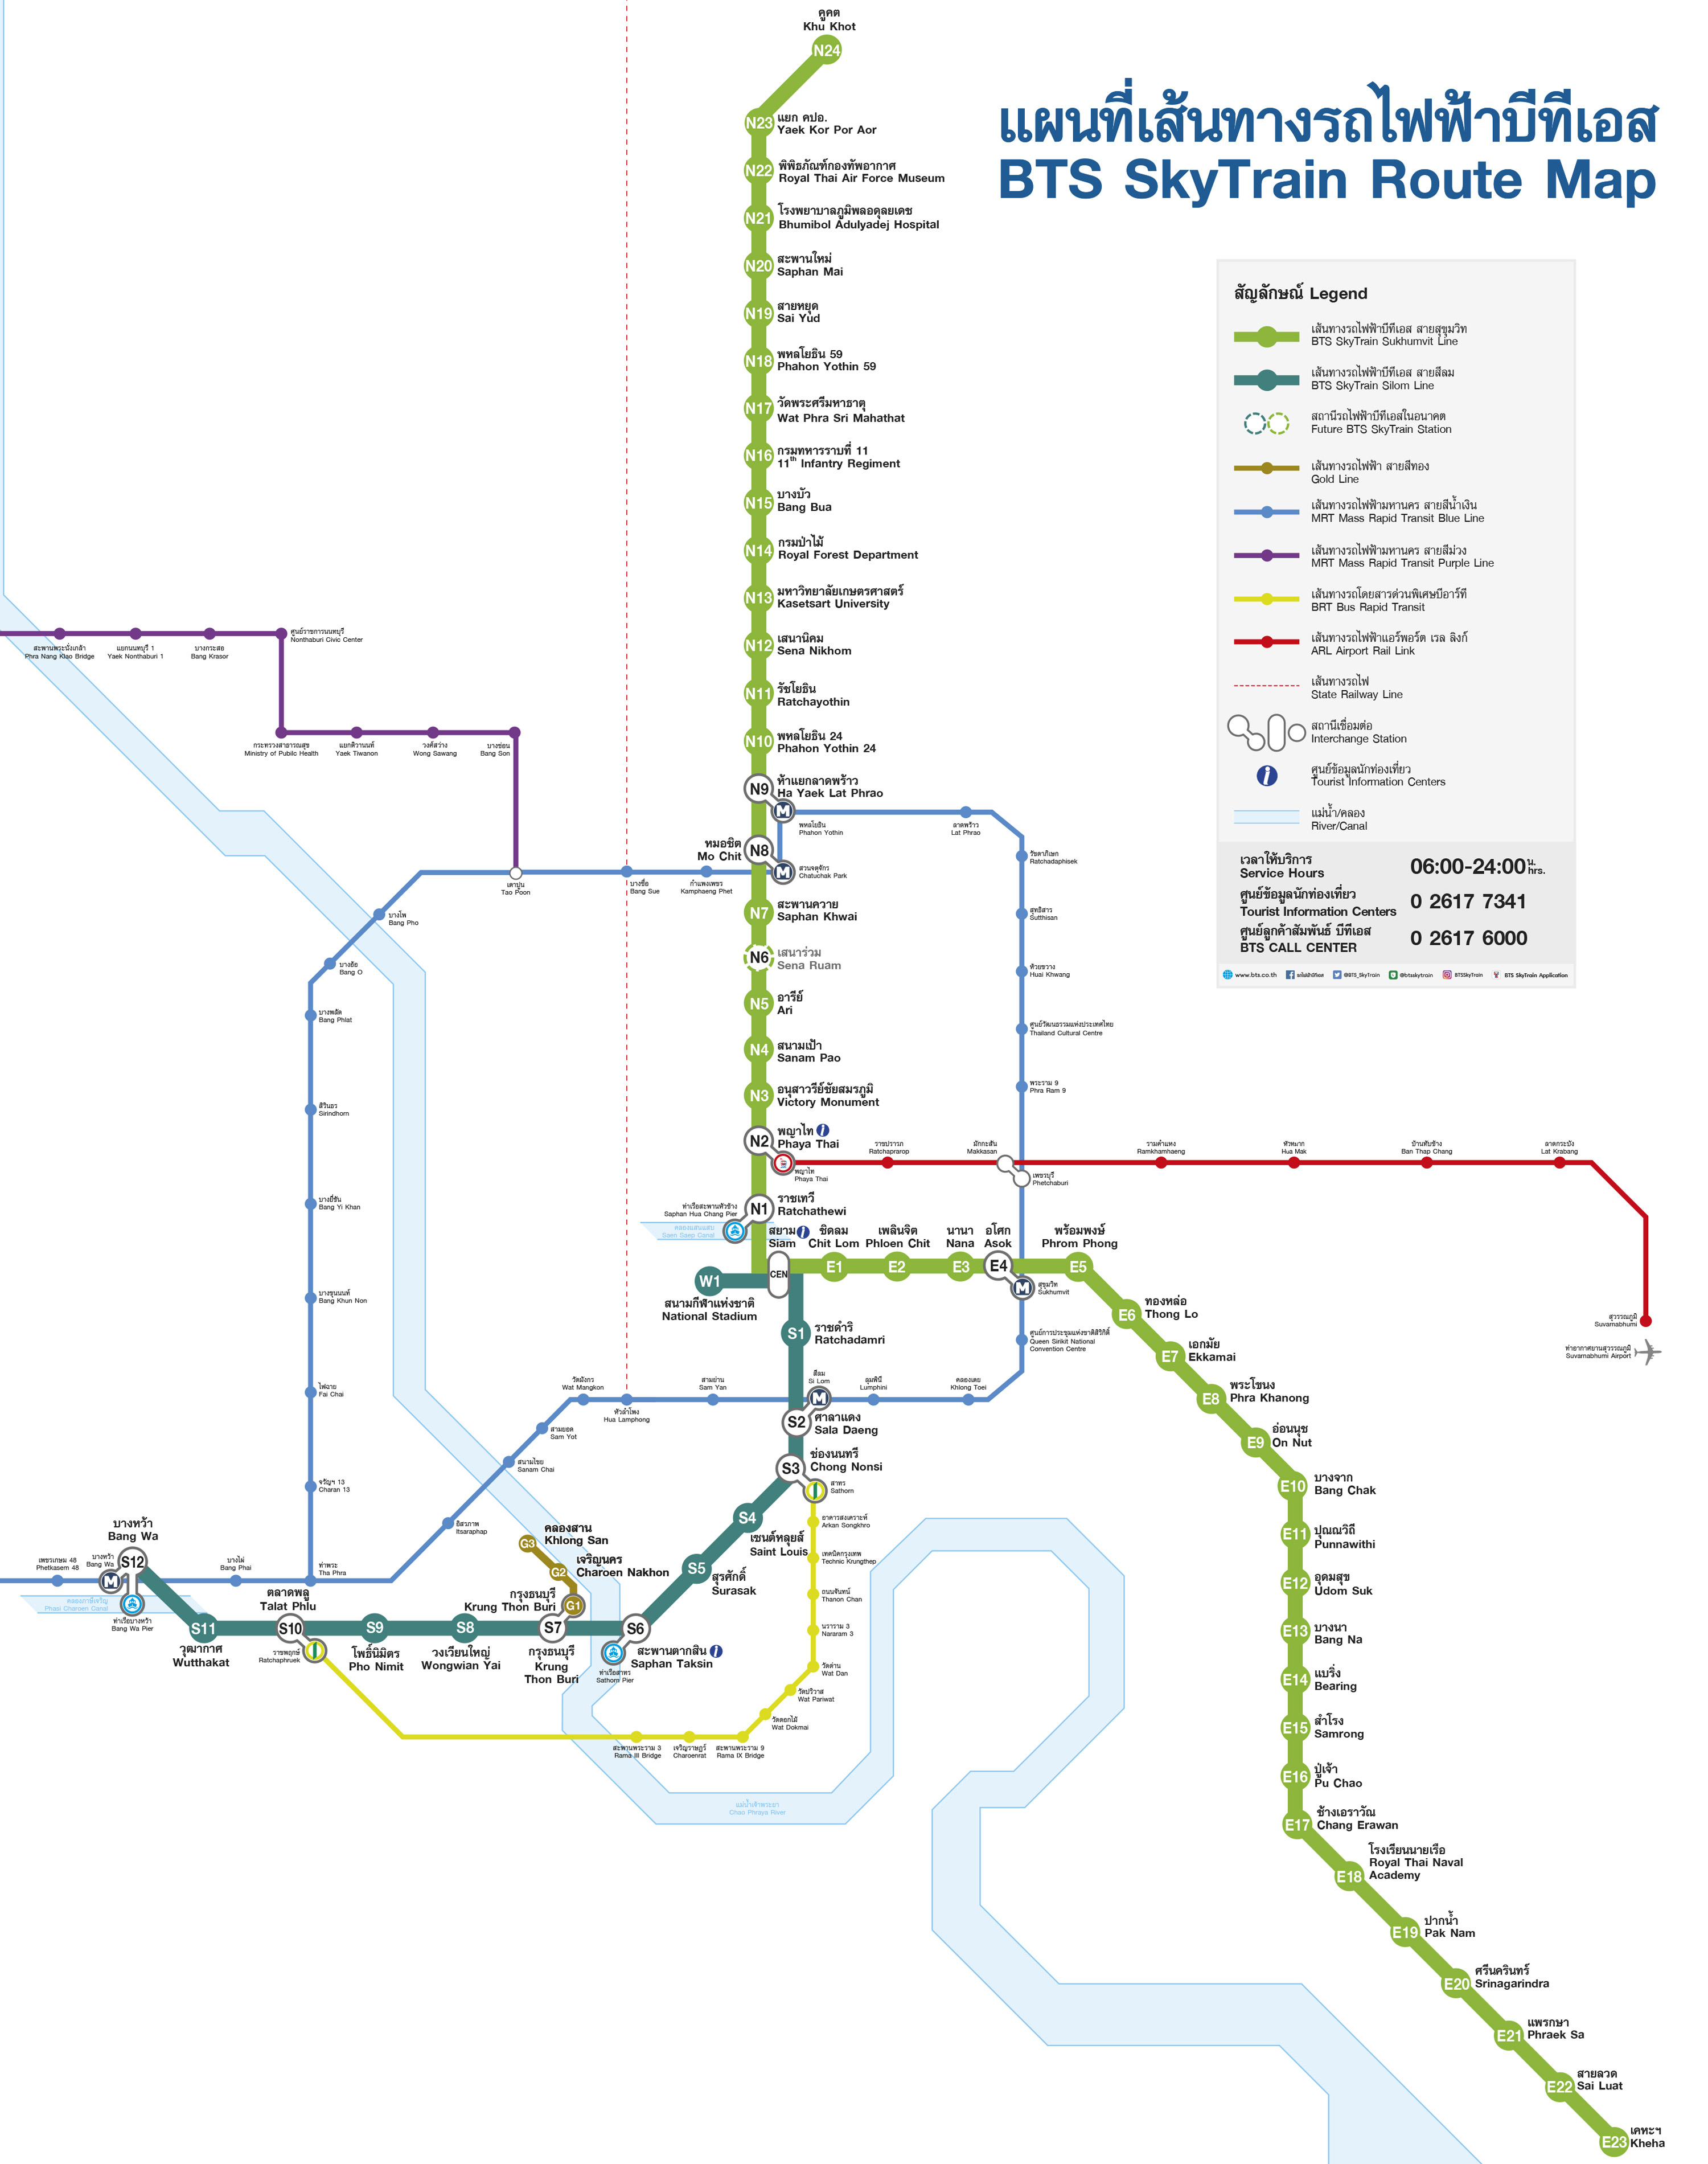 曼谷BTS捷運路線圖2021年1月版本.jpg